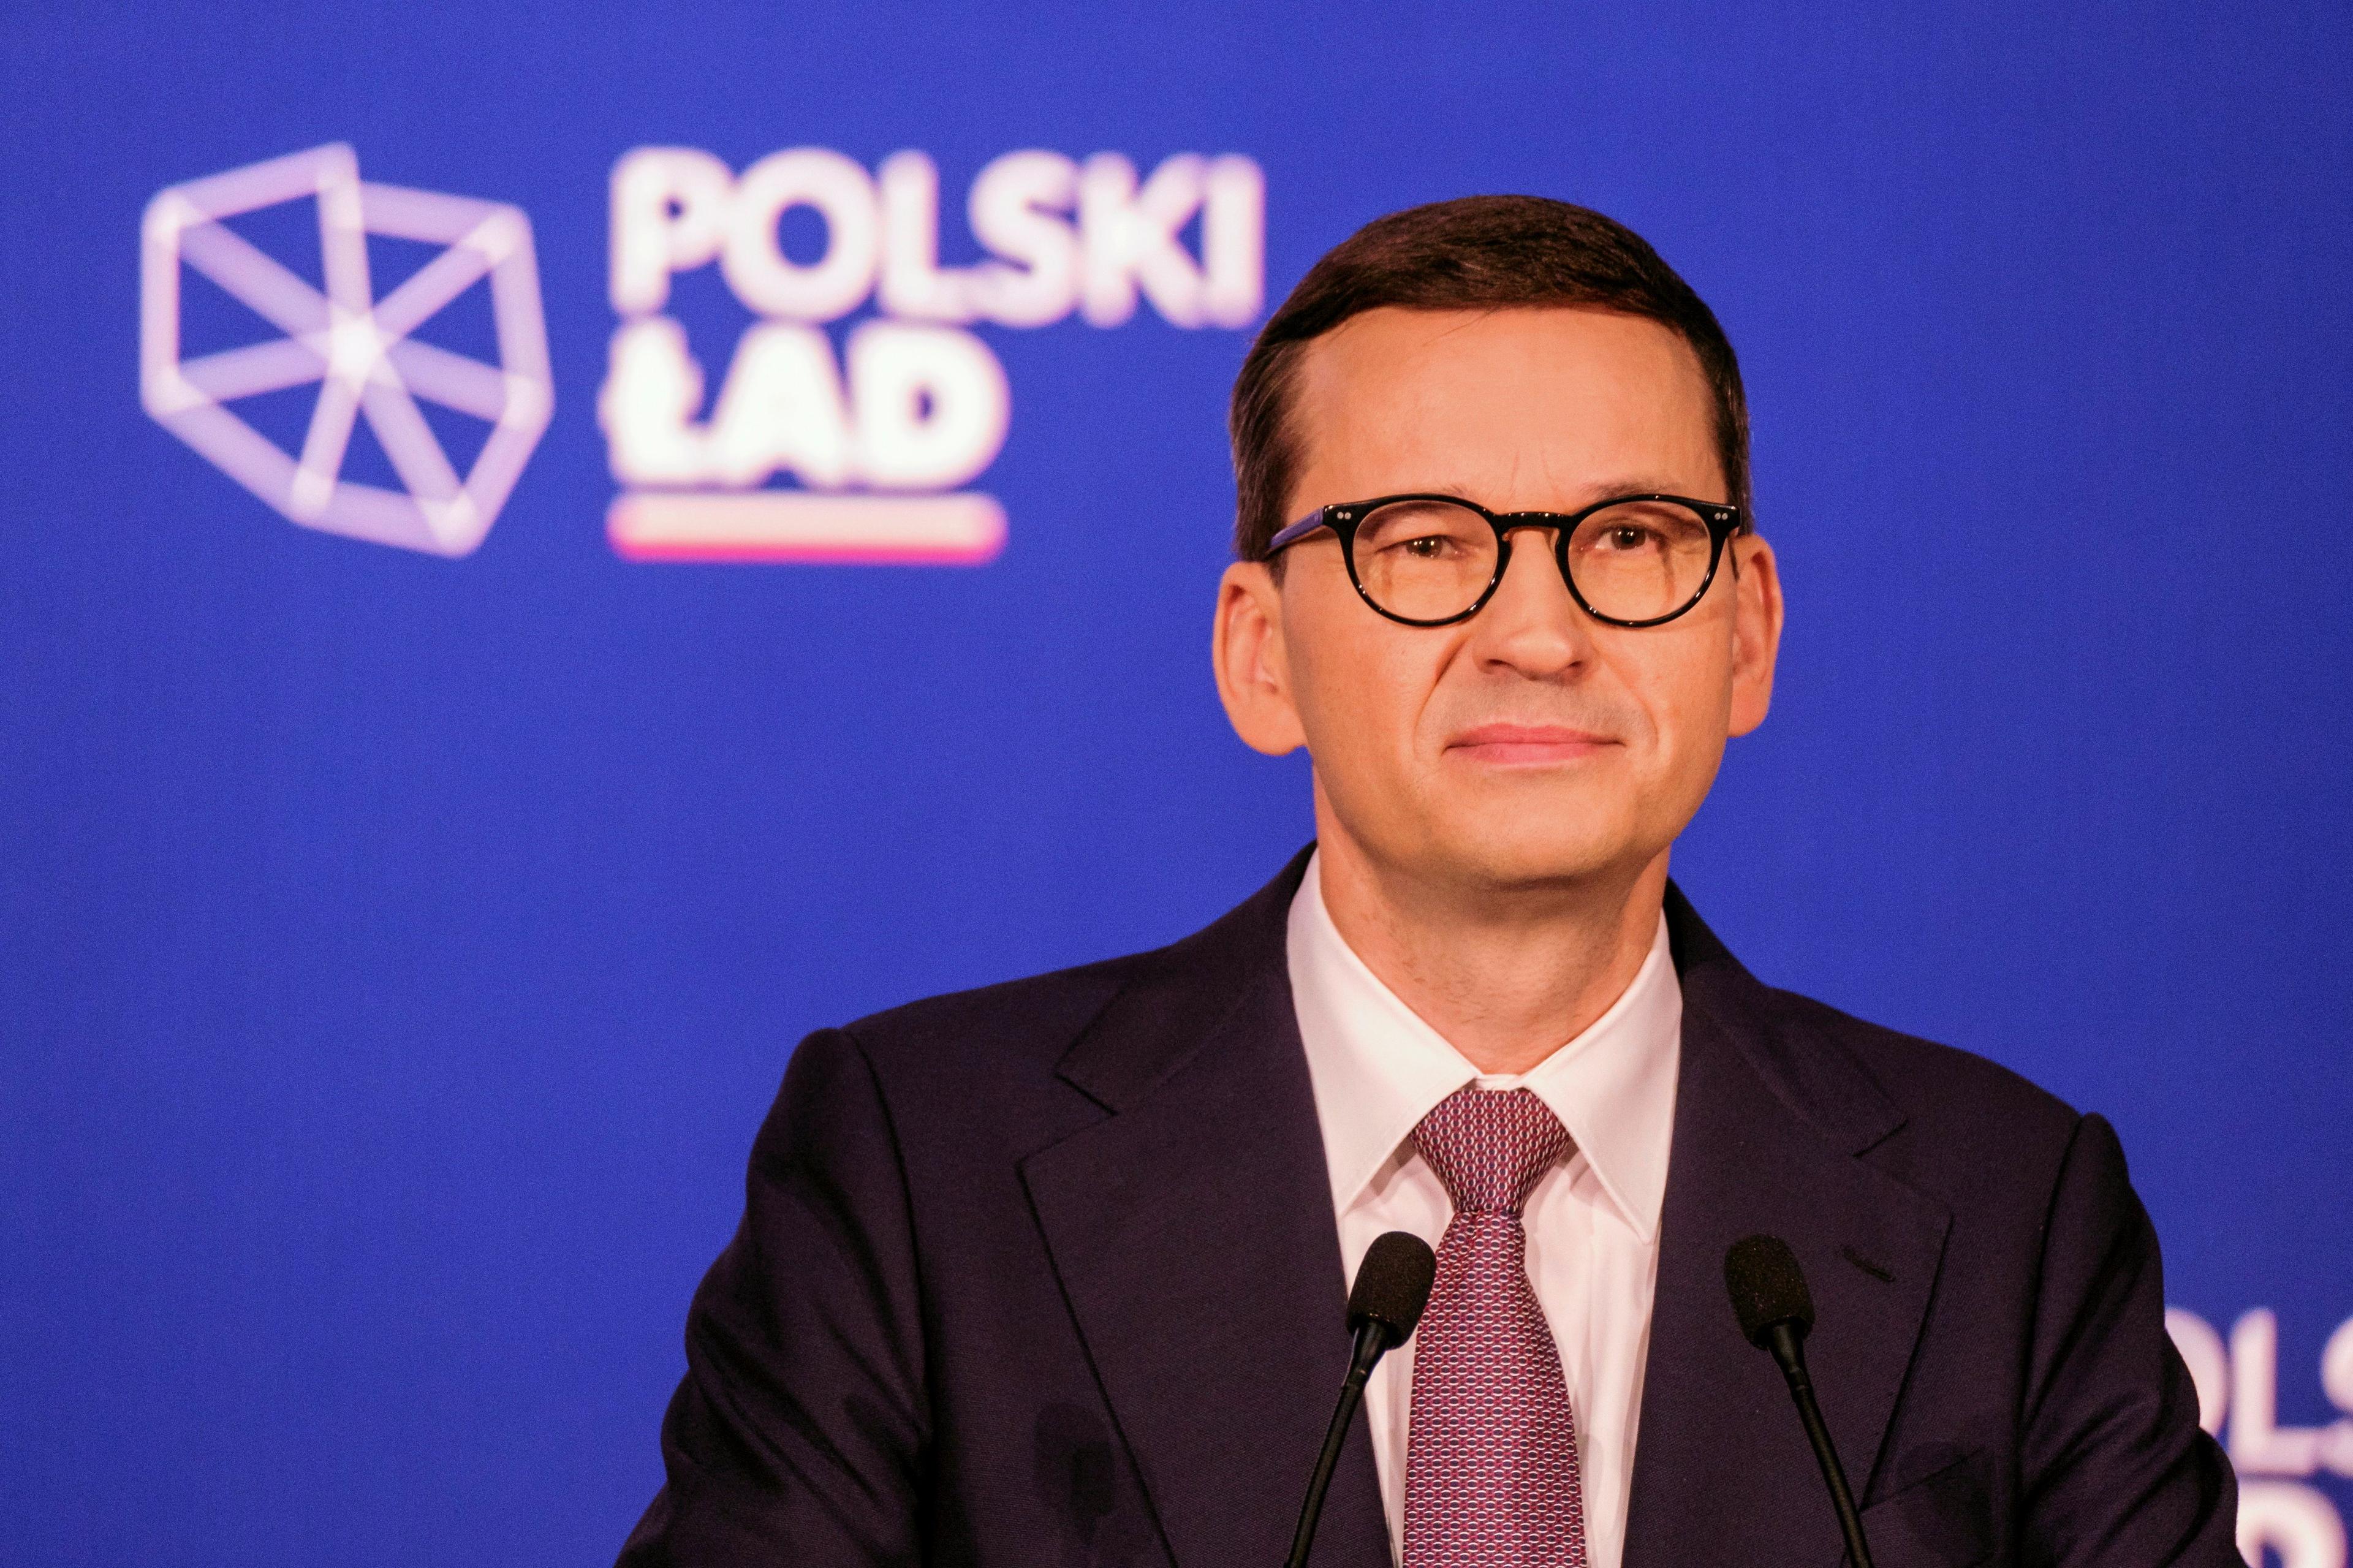 Mężczyzna w średnim wieku w garniturze. To premier Mateusz Morawiecki. W tle napis "Polski Ład"